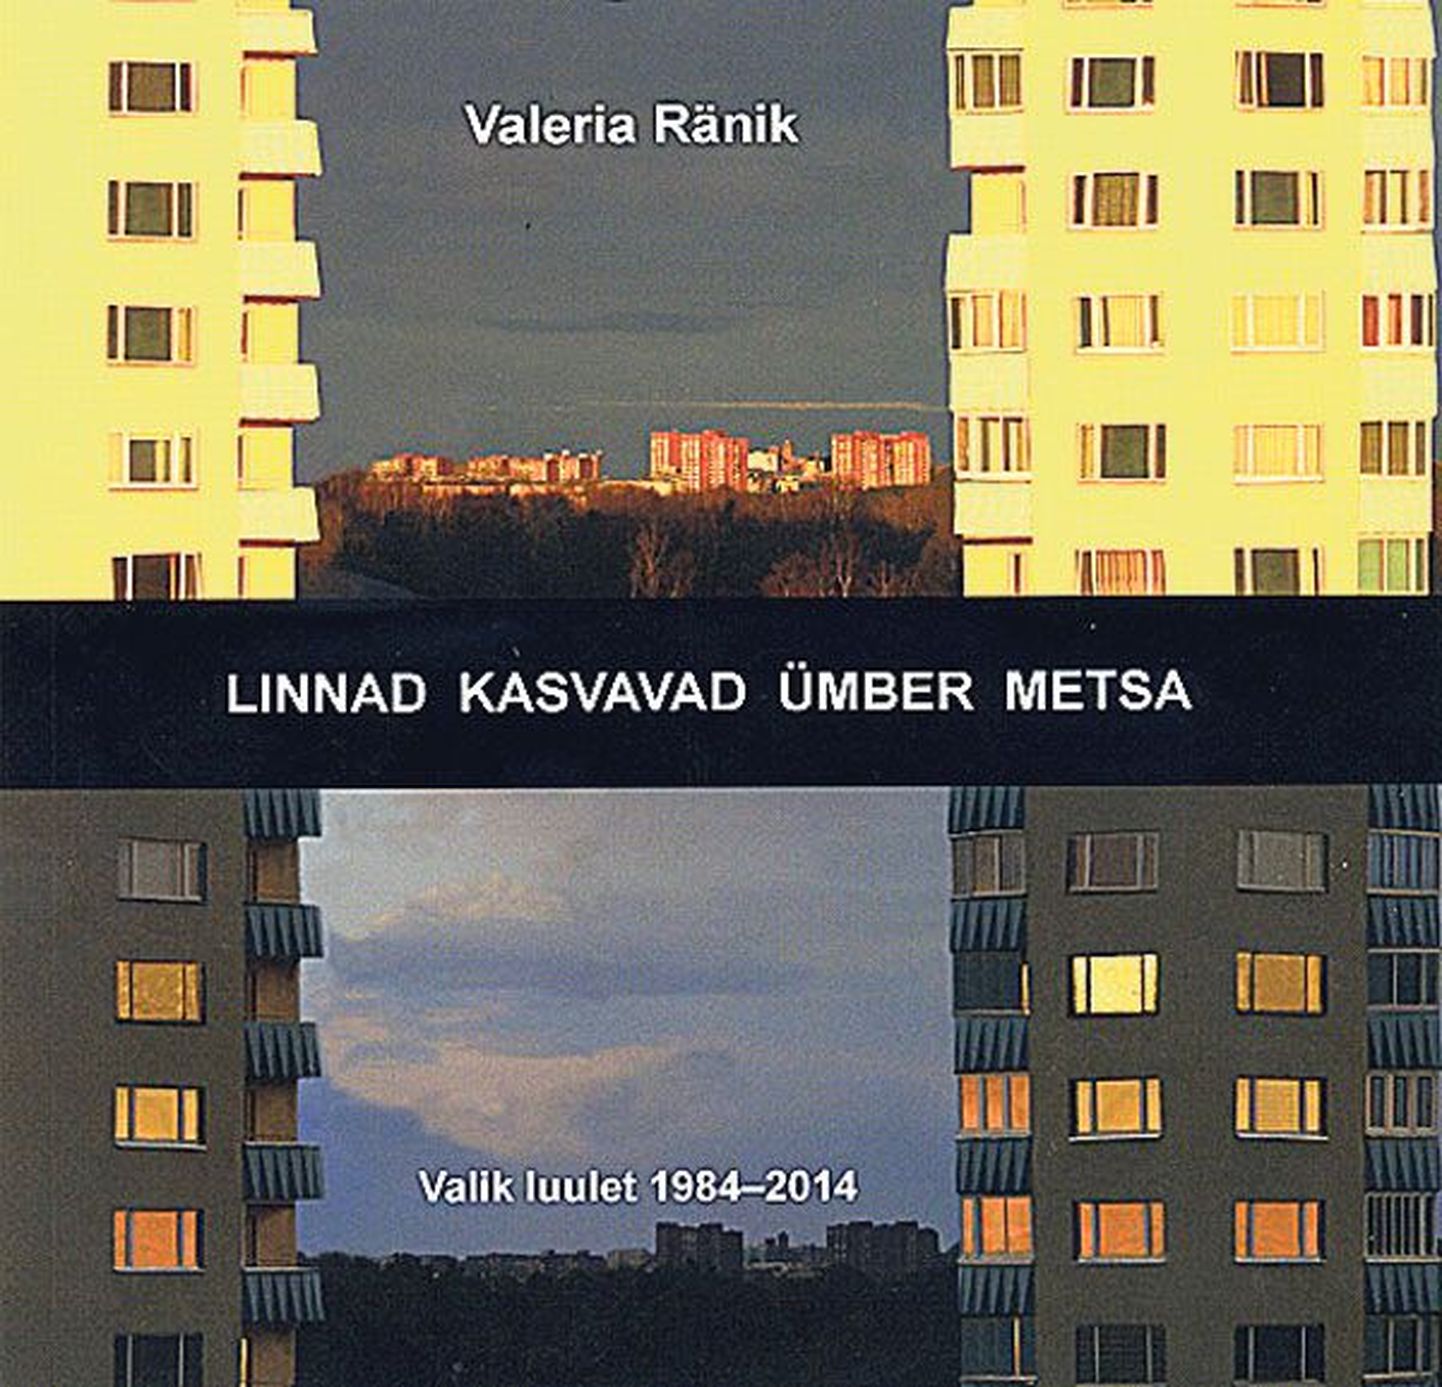 Valeria Ränik, «Linnad kasvavad ümber metsa. Valik luulet 1984–2014»,
Tartu 2014.